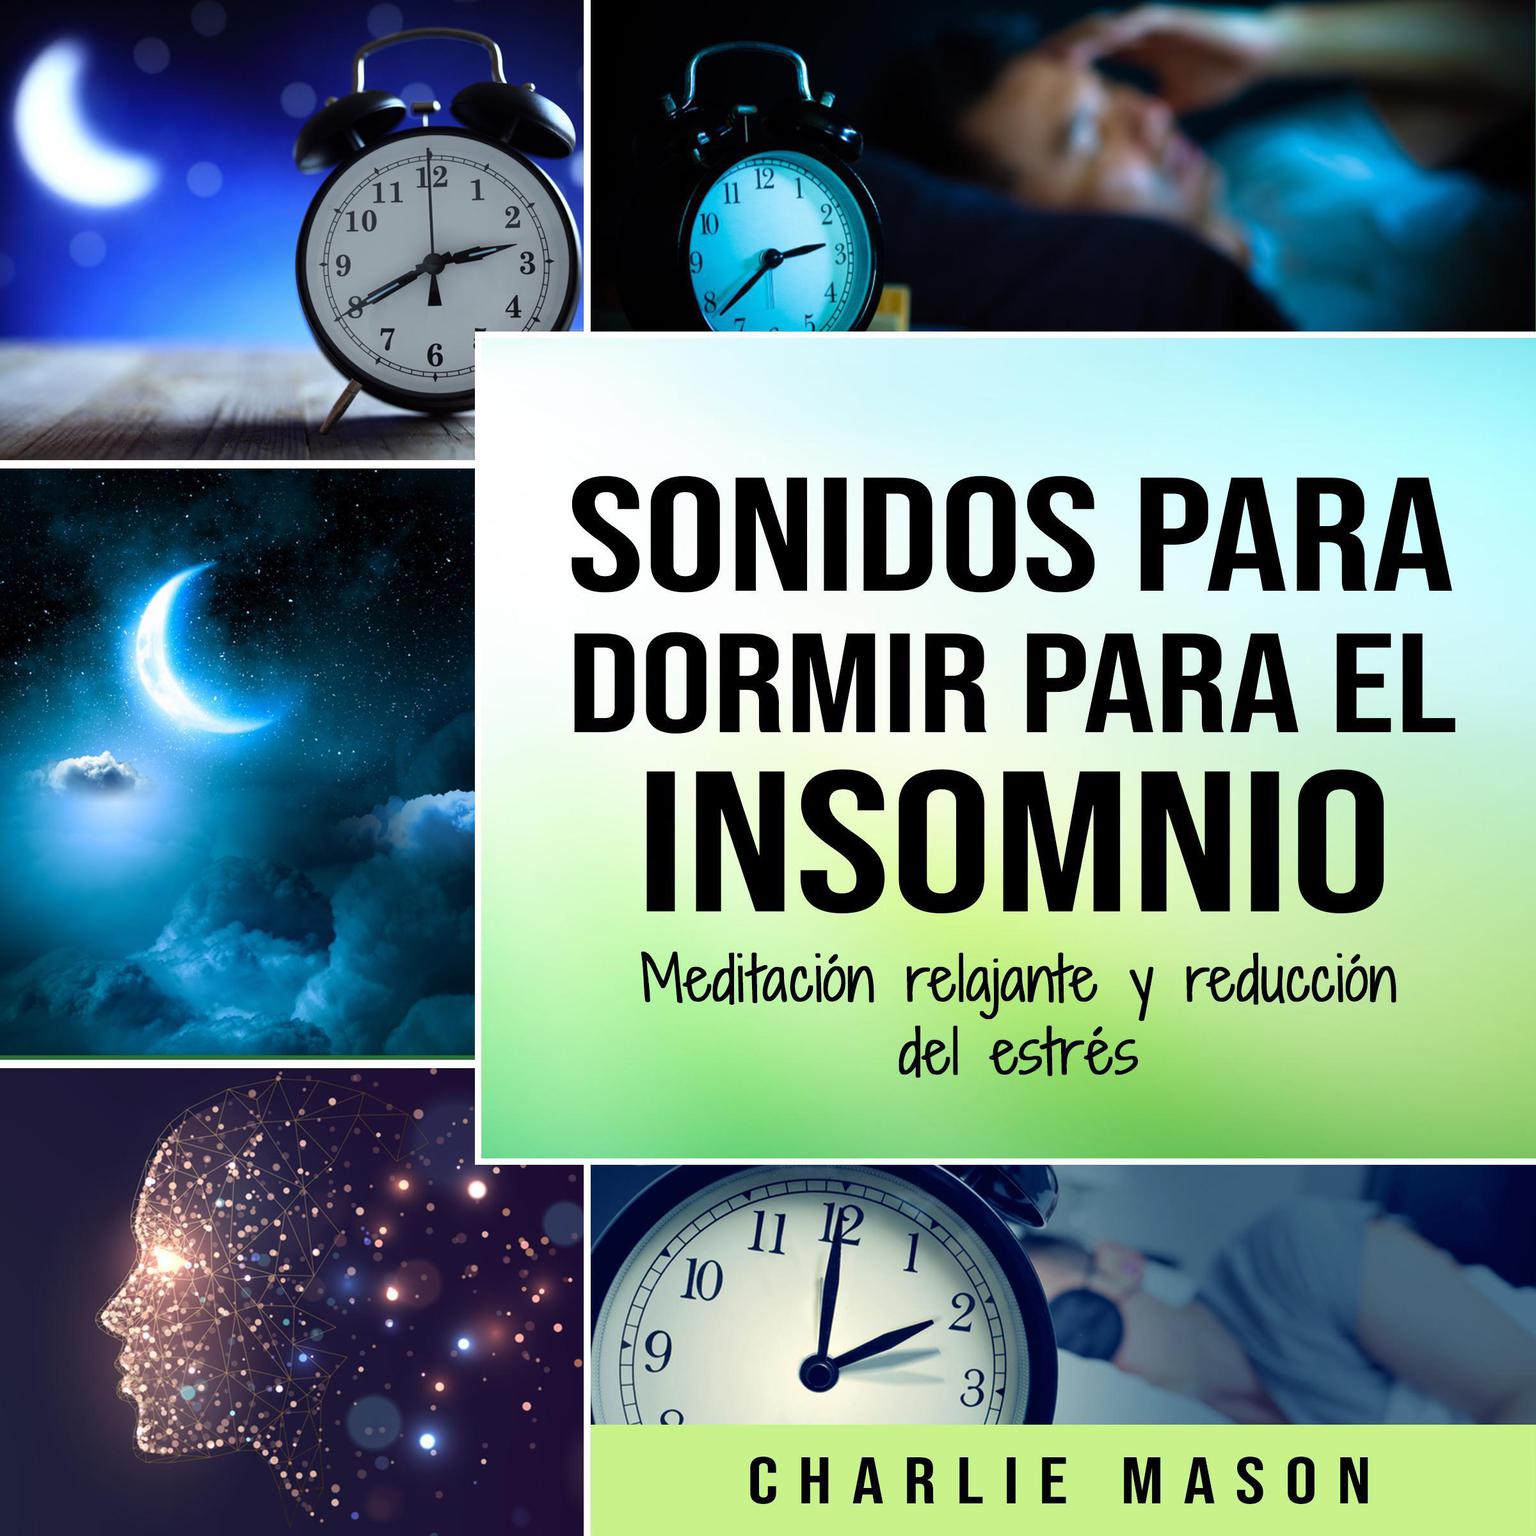 Sonidos para dormir para el insomnio: Meditación relajante y reducción del estrés Audiobook, by Charlie Mason